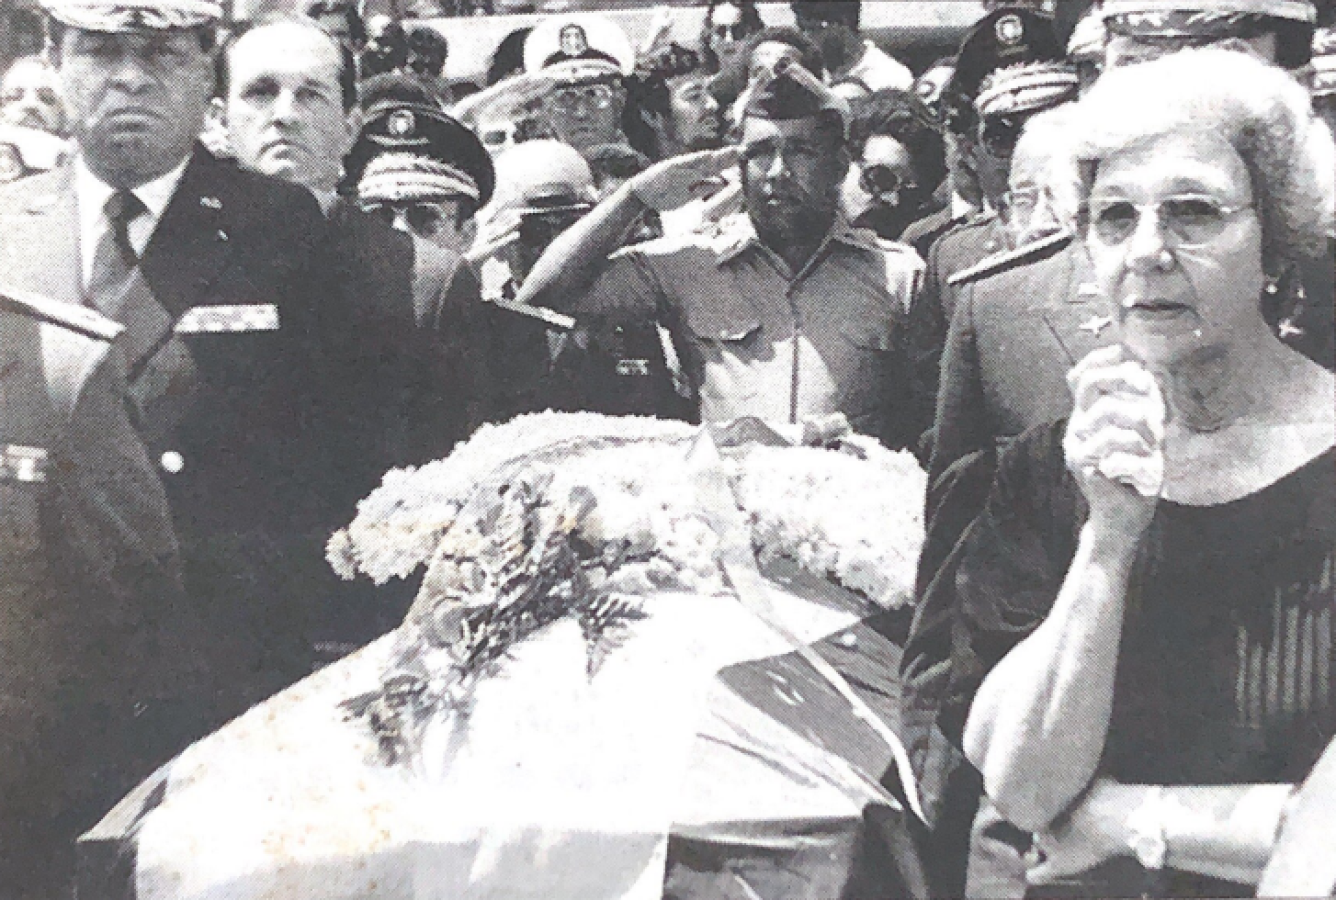 Honras fúnebres del presidente Guzmán, en 1982. Al lado del ataud, su esposa Renée.